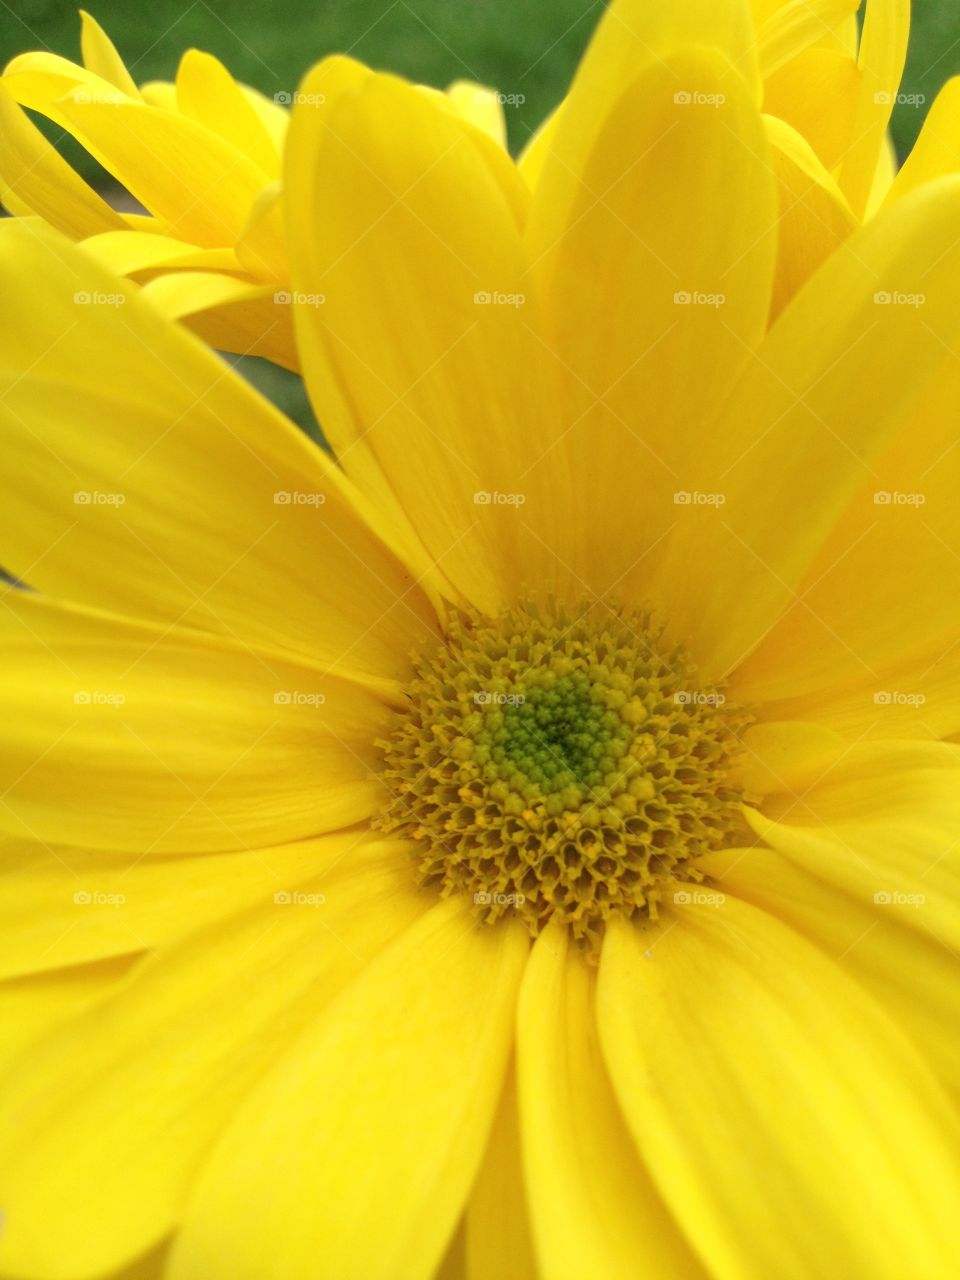 Morning sunshine!. Vibrant yellow flower!